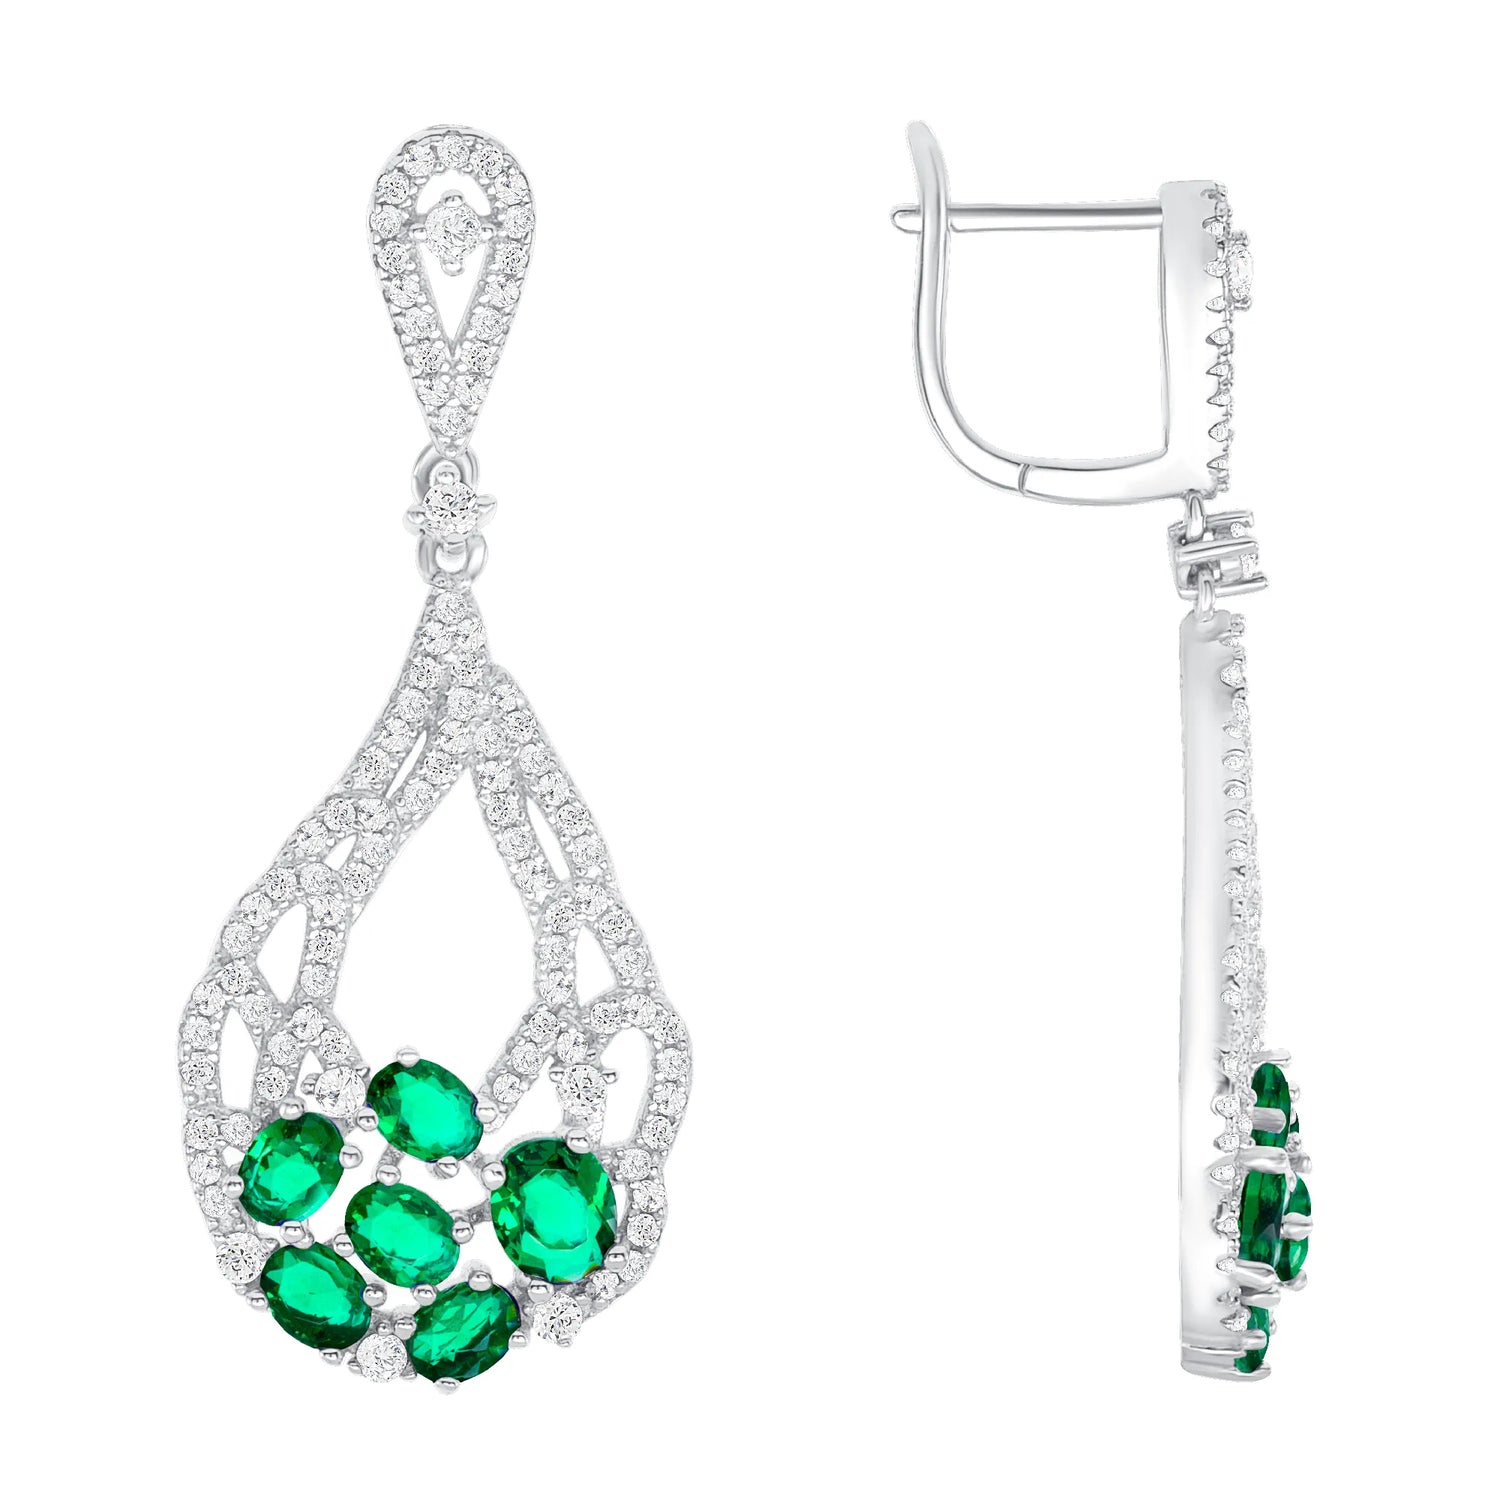 925 Sterling Silver Oval Cut Green CZ with Pavé CZ Bouquet Teardrop Pendant &amp; Earrings Jewelry Set